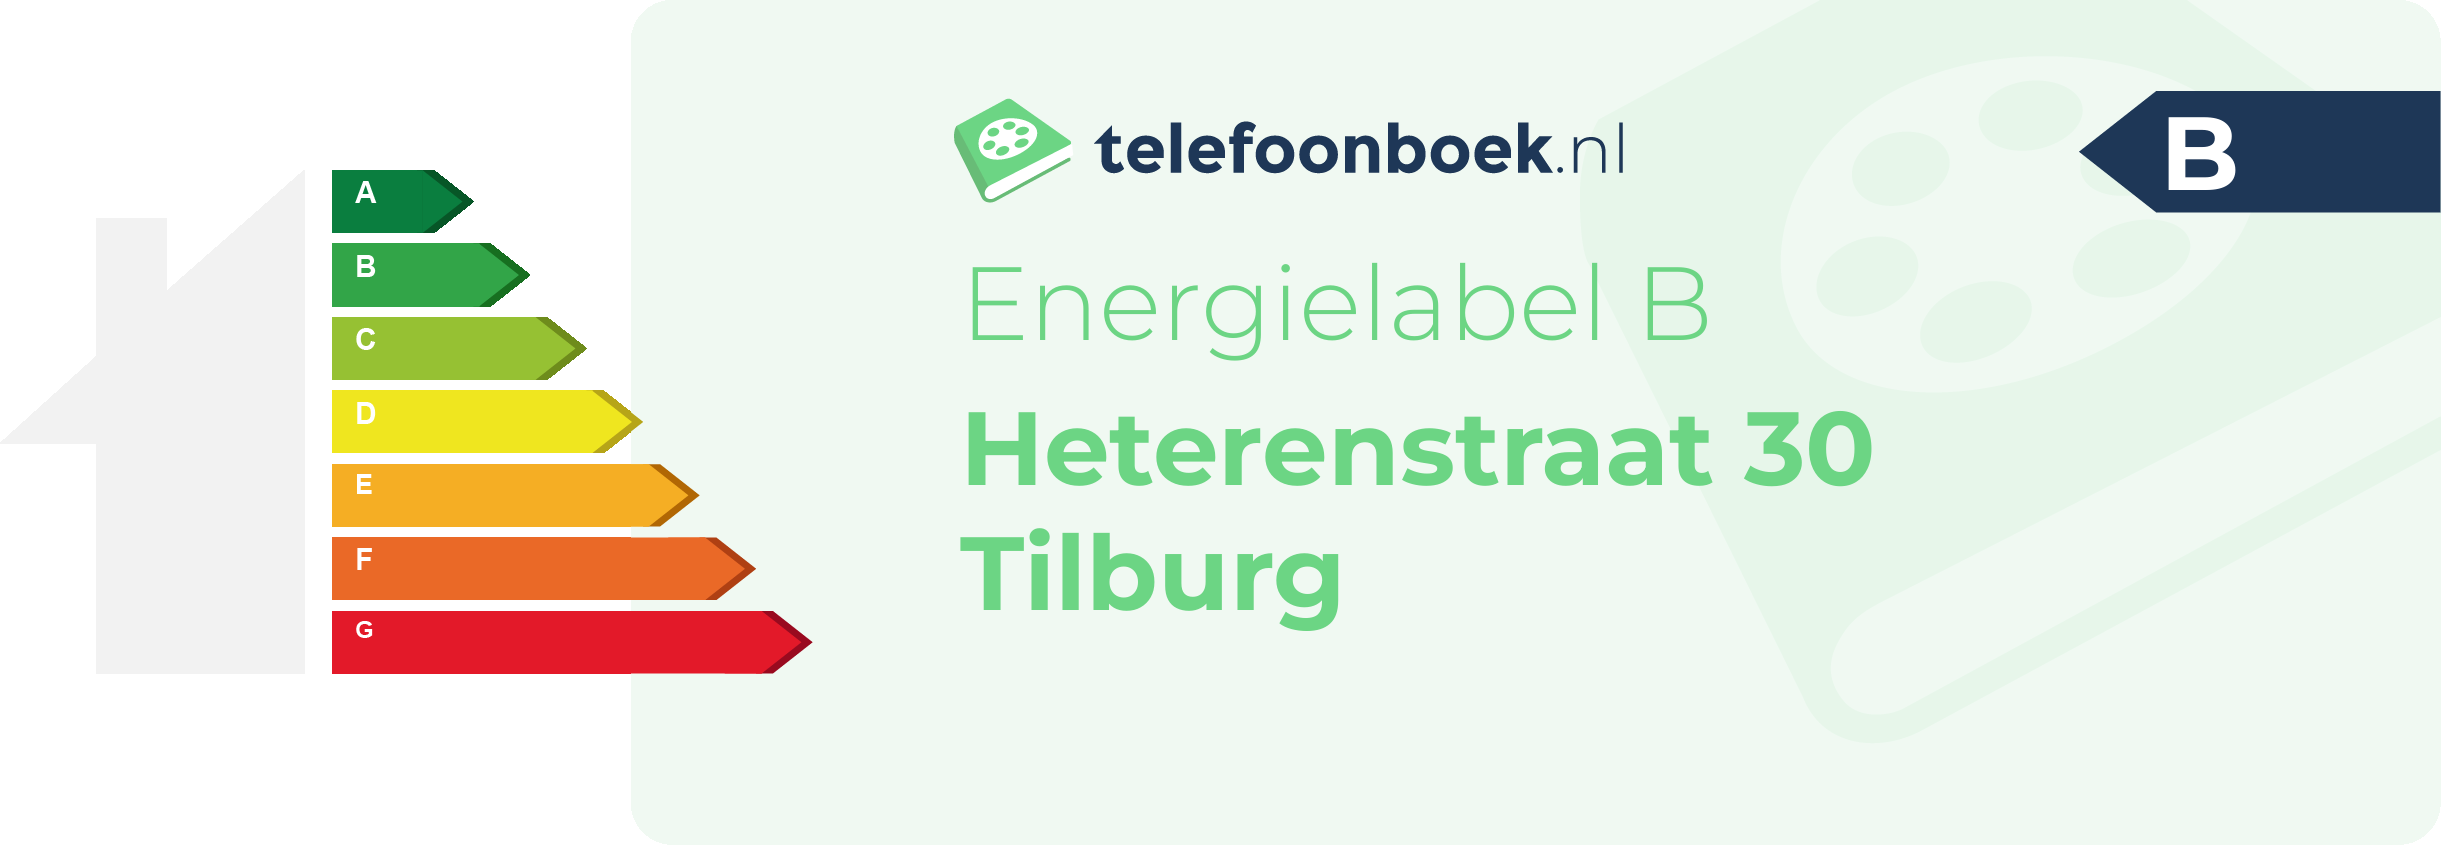 Energielabel Heterenstraat 30 Tilburg